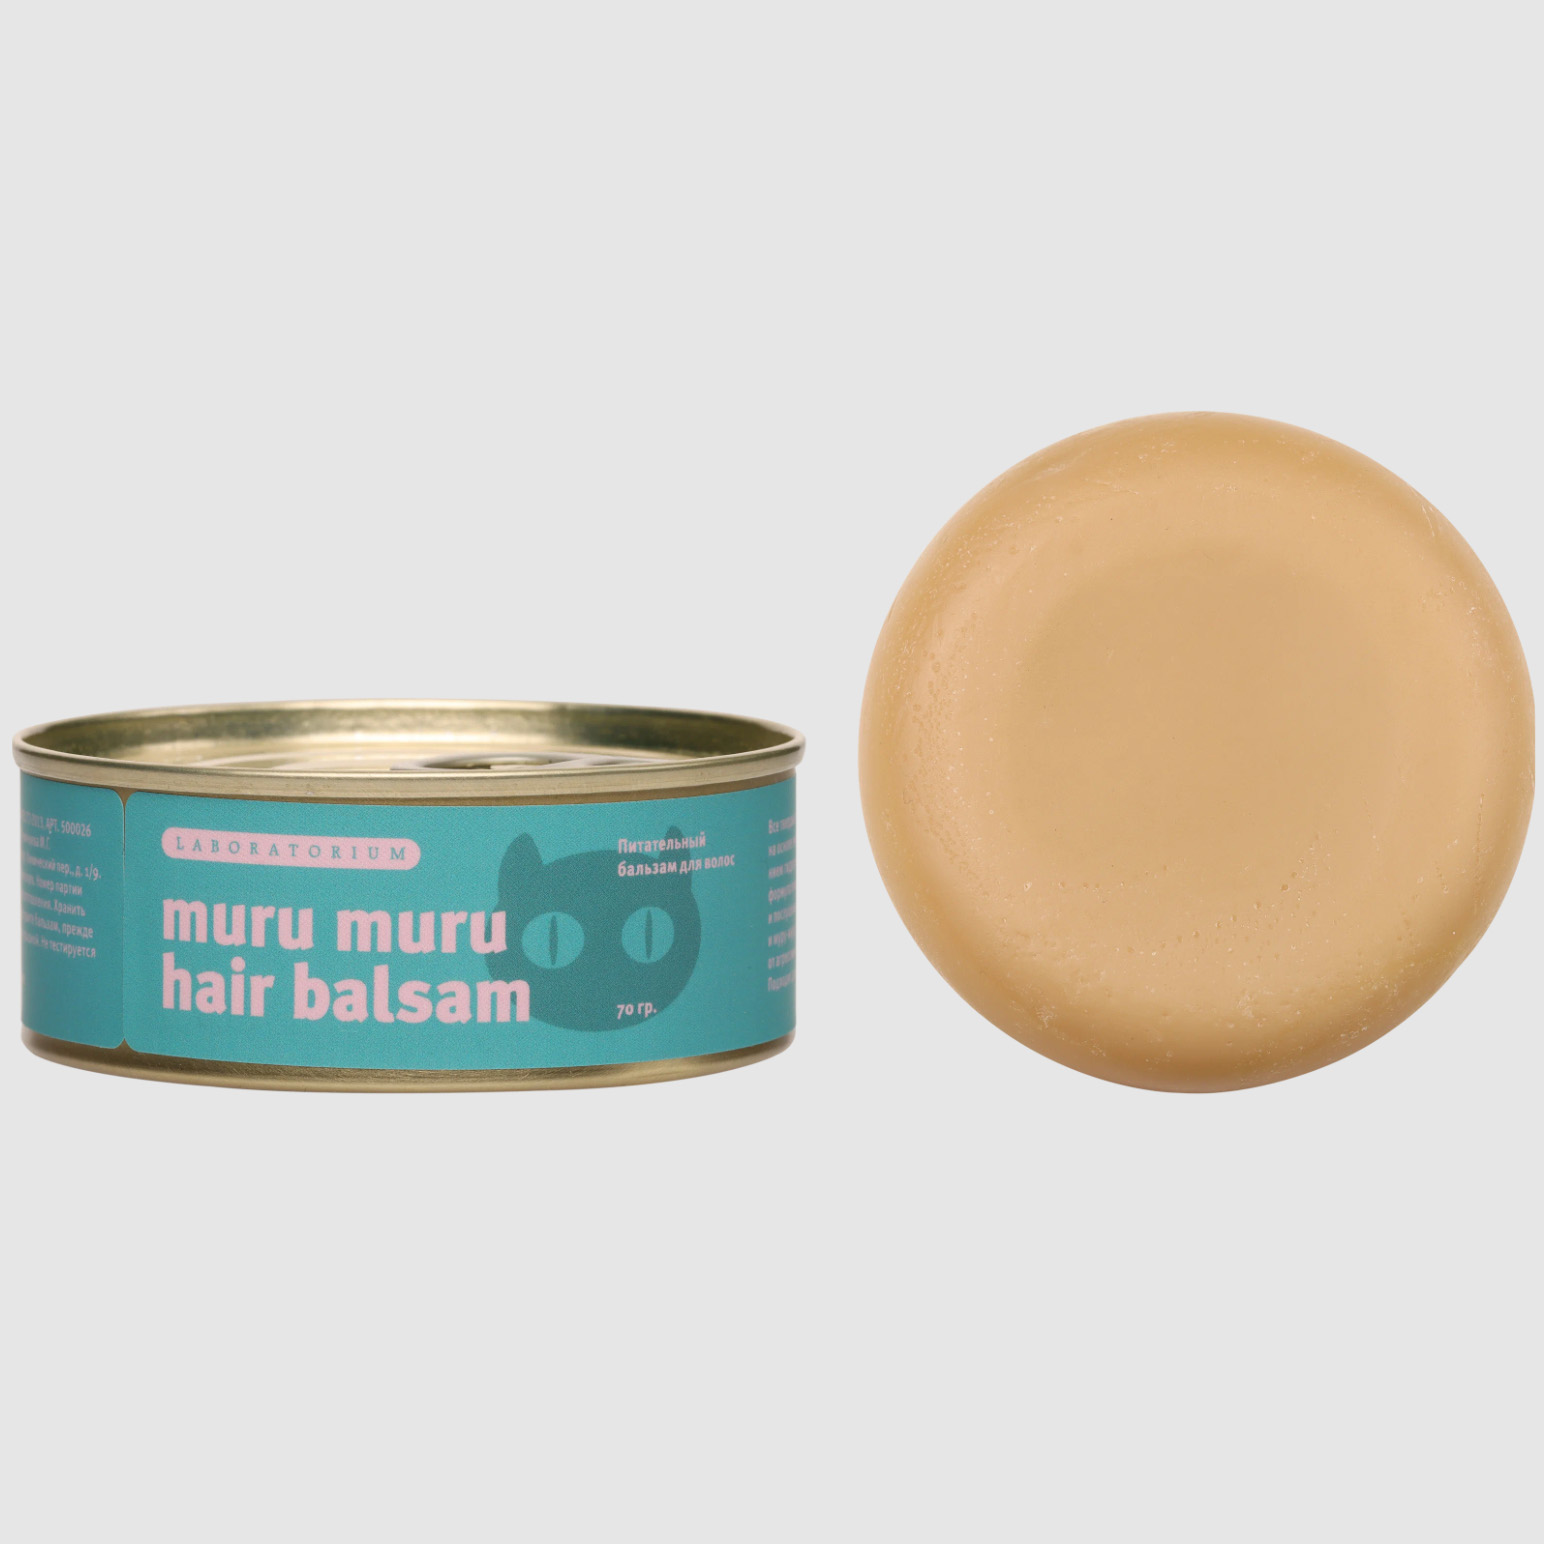 Бальзам для волос Laboratorium Muru Muru питательный, твердый, 70 г согревающий бальзам warme balsam